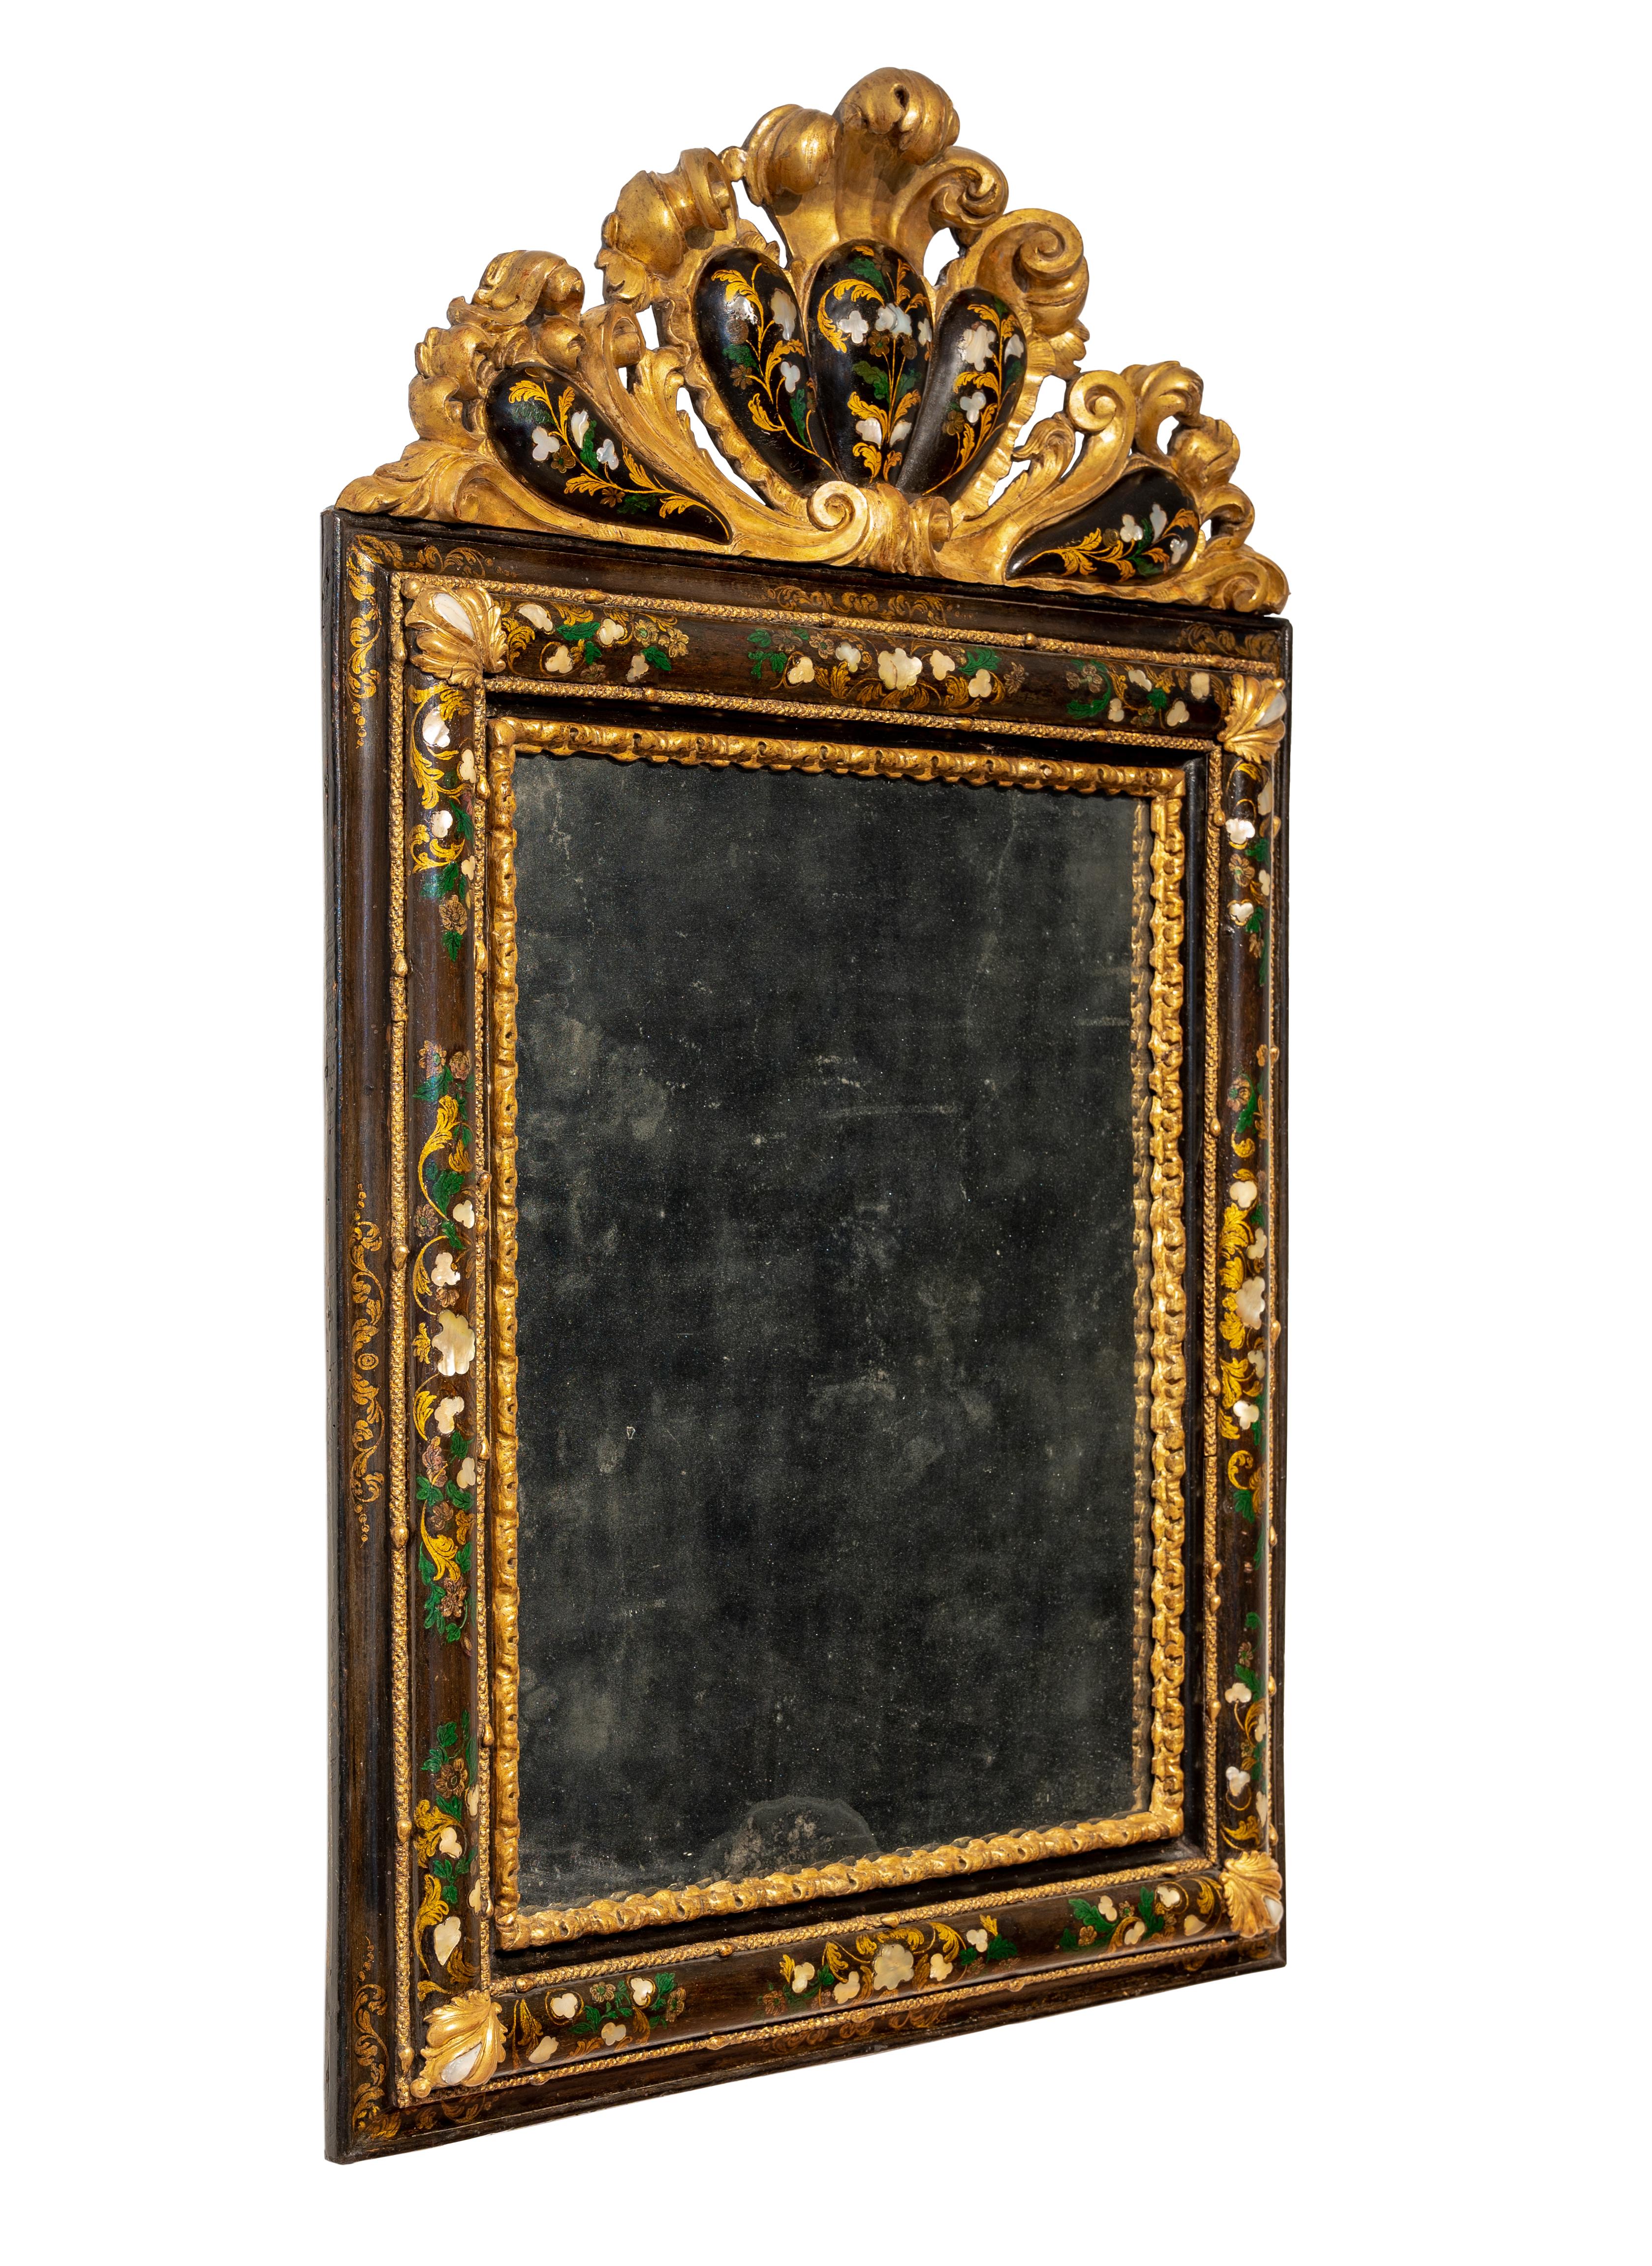 Außergewöhnlicher venezianischer Spiegel aus geschnitztem, lackiertem und vergoldetem Holz. Leicht gerundetes Band mit Blattwerkdekor in polychromem Lack und Perlmutteinlagen, geschnitzte und blattverzierte Friese an den Ecken, geformtes,